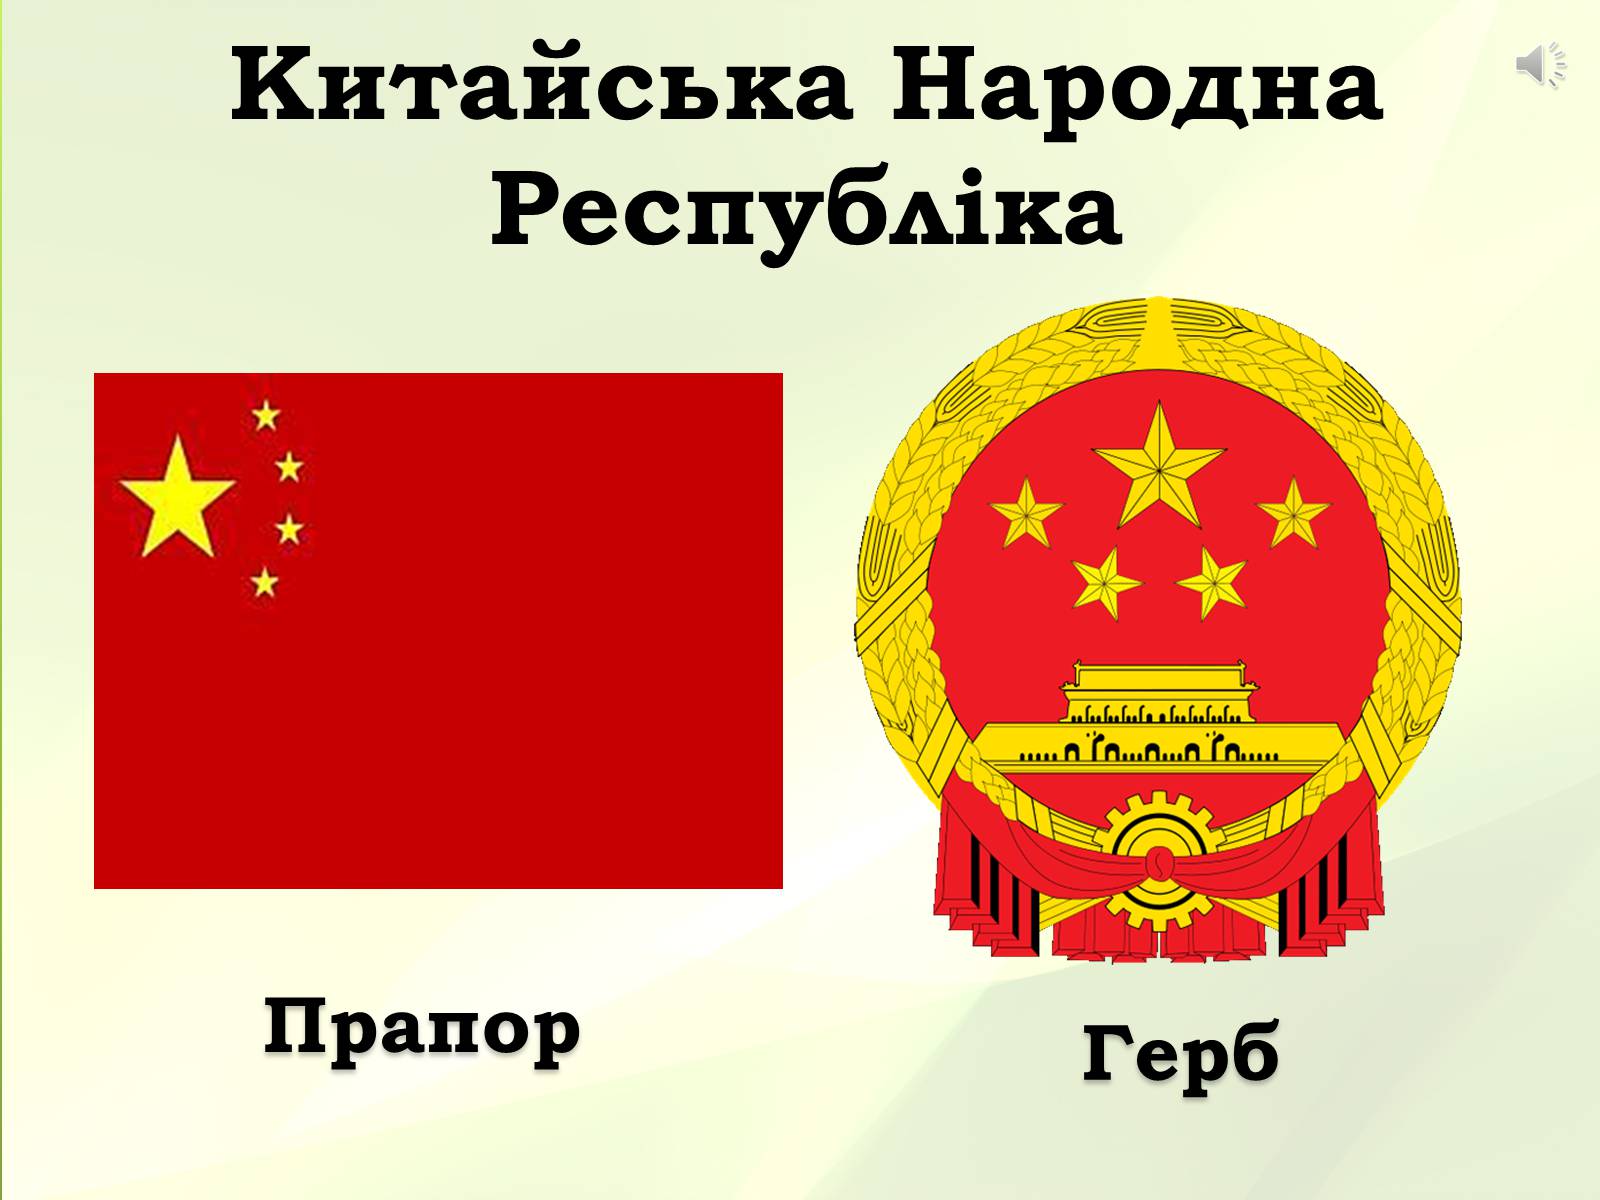 китайский флаг фото и герб